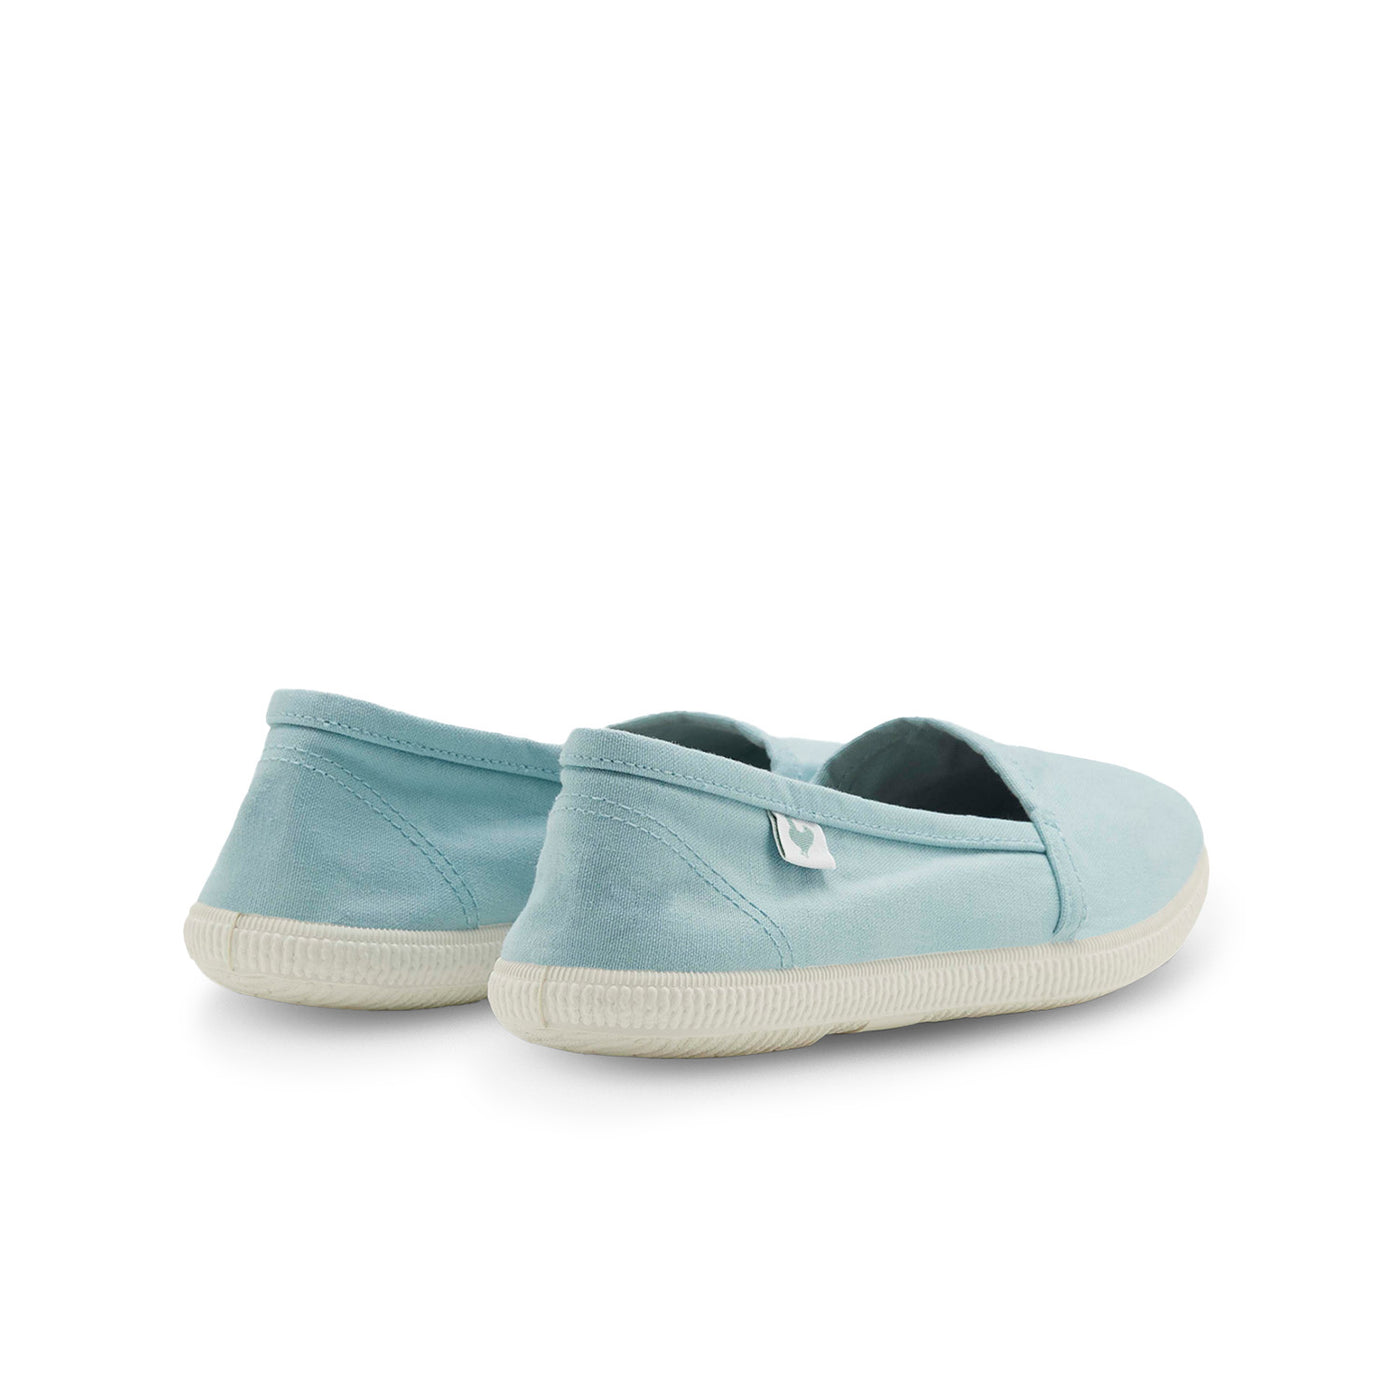 Original Pitas Beach Shoes in Aqua Blue